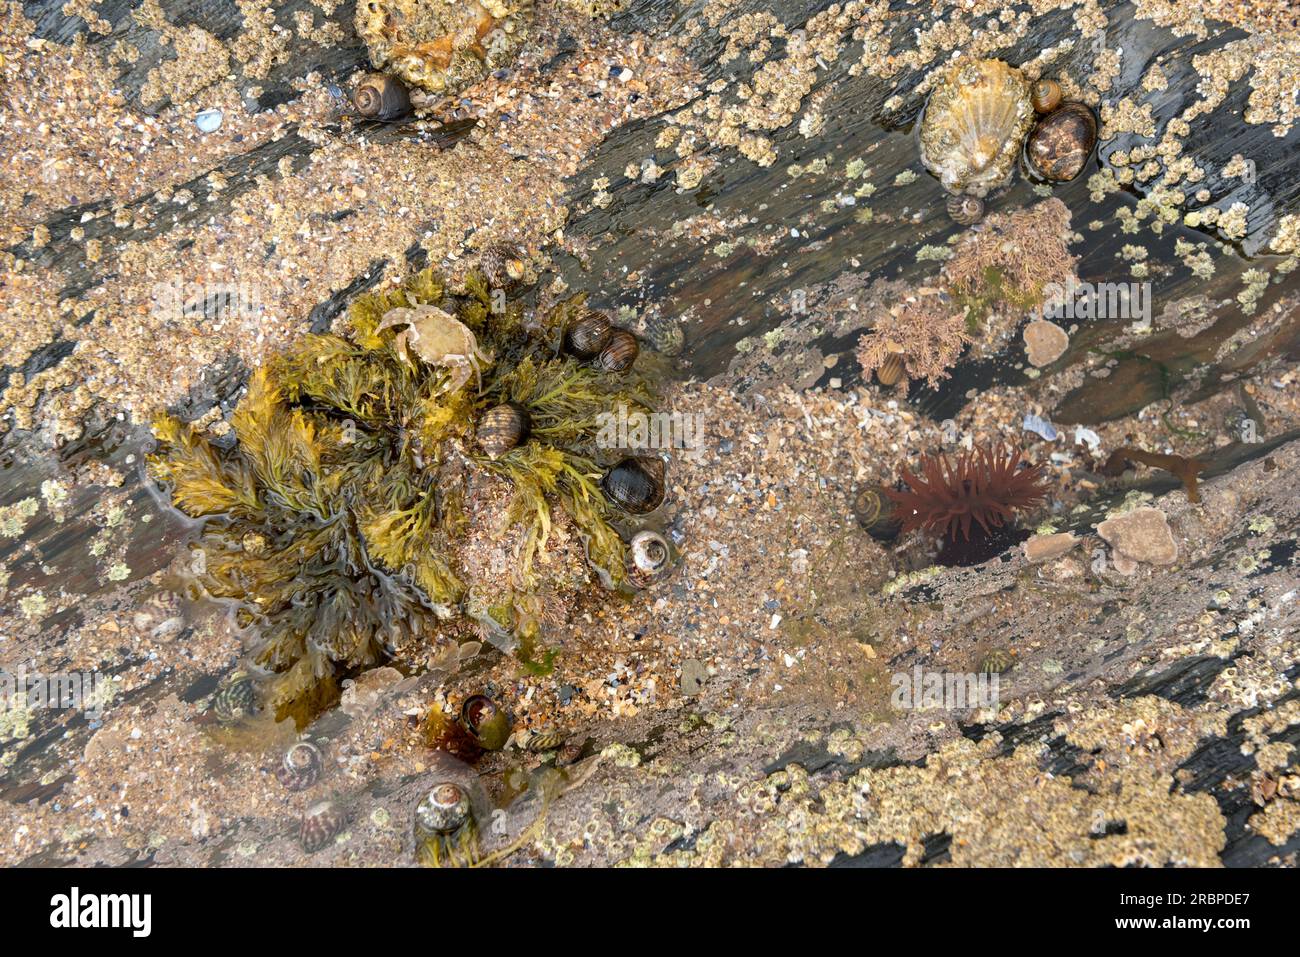 Piscine rocheuse avec anémone de perles, limpets, pervenches, coquilles supérieures et coquille de crabe mue sur algues Banque D'Images